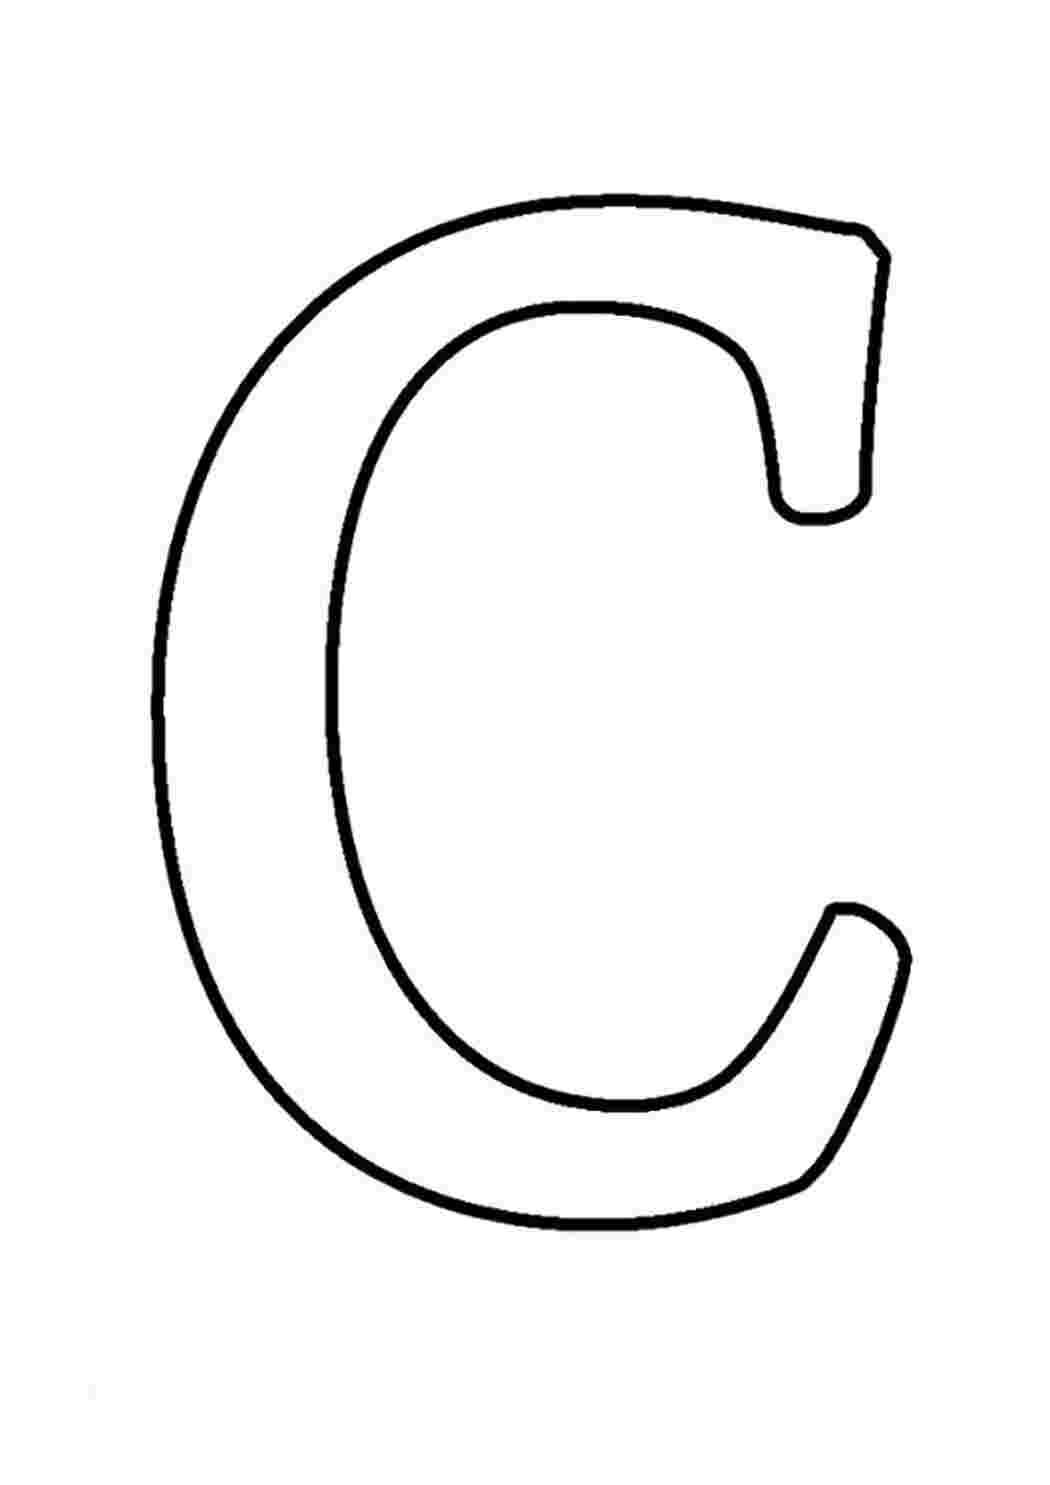 Раскраски для детей, алфавит набор, буква C